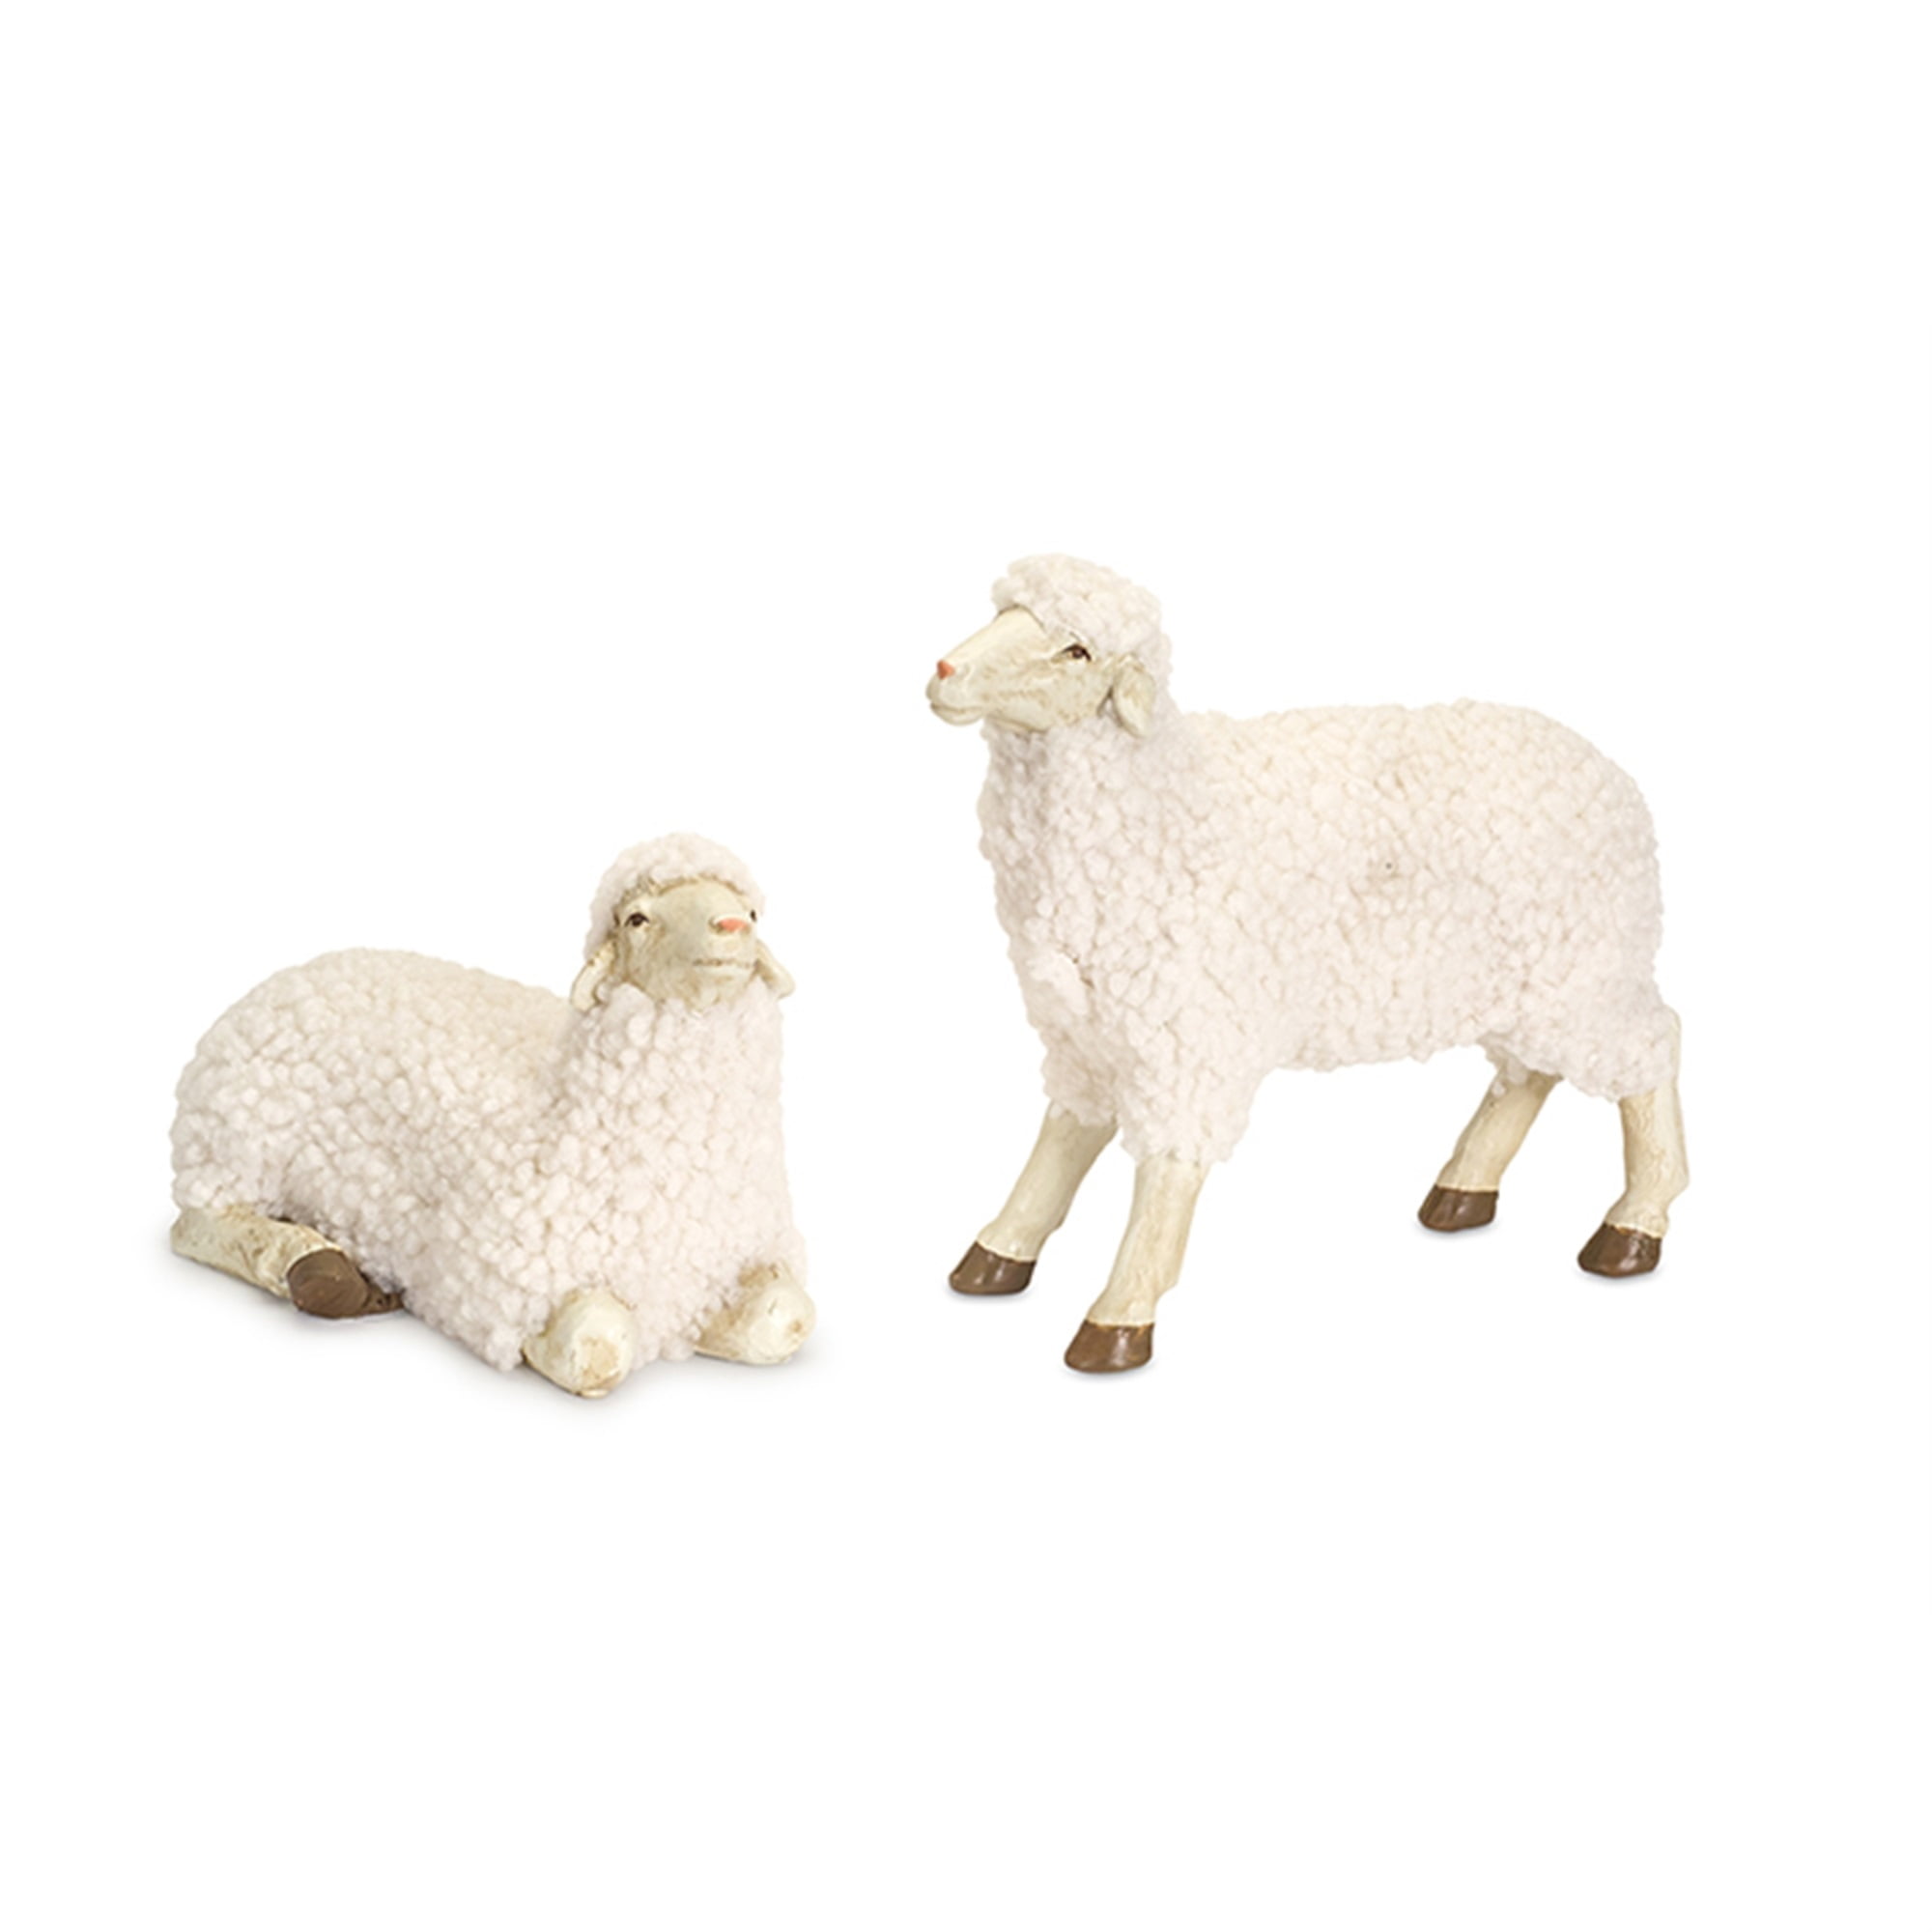 Sheep (Set of 4) 4.75"H, 7.5"H Resin